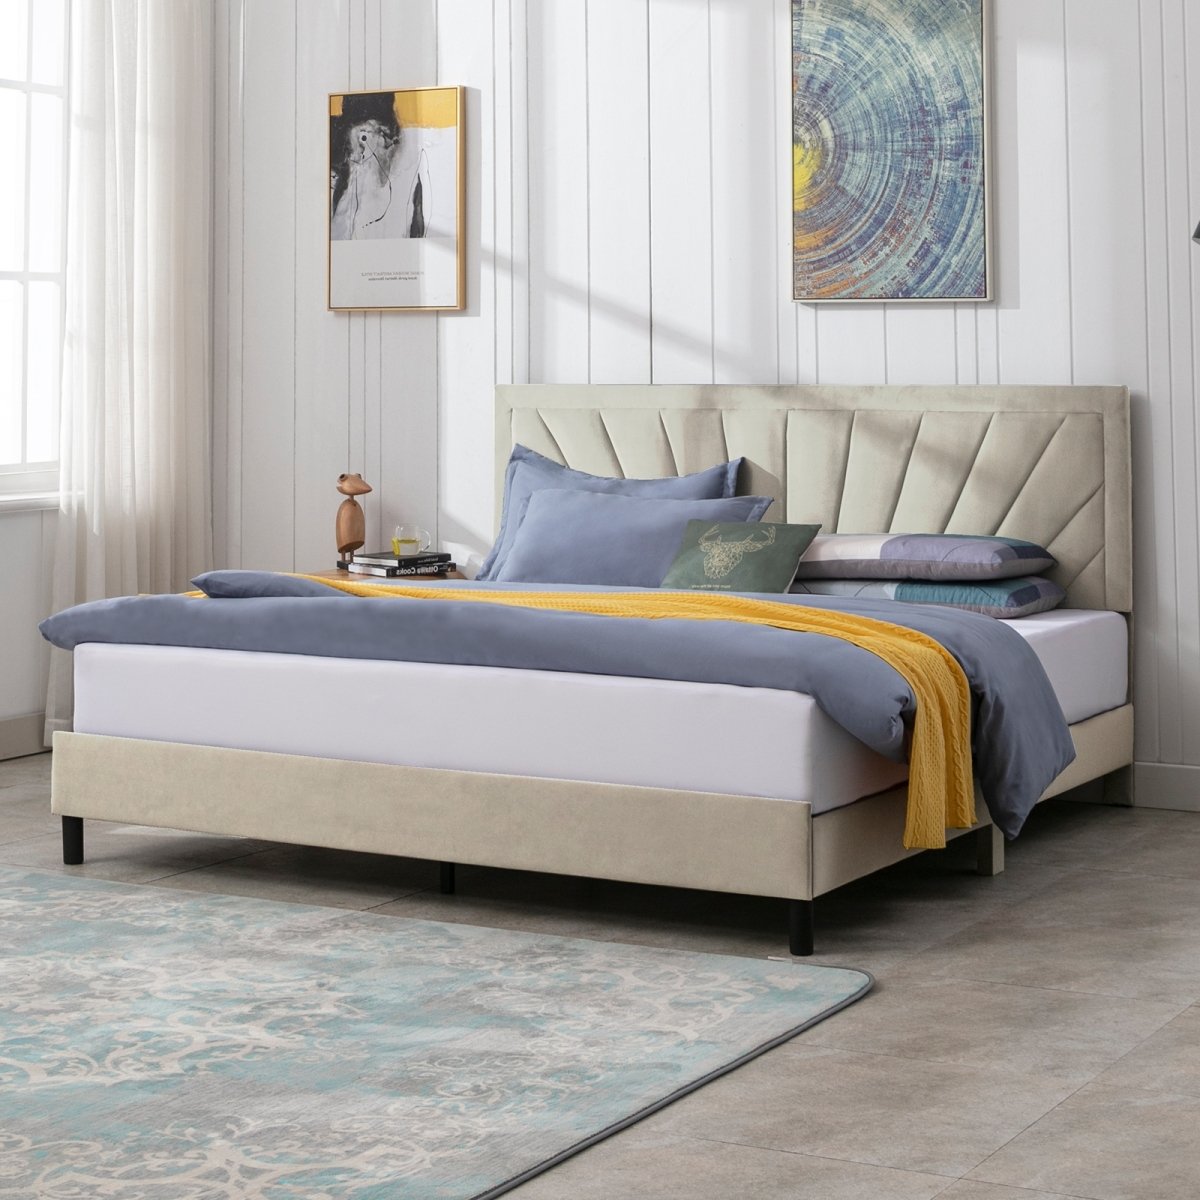 Upholstered Bed Frame | Modern Velvet Platform Bed with Headboard and Wood Slat Support No Box Spring Needed - Mjkonebed frame